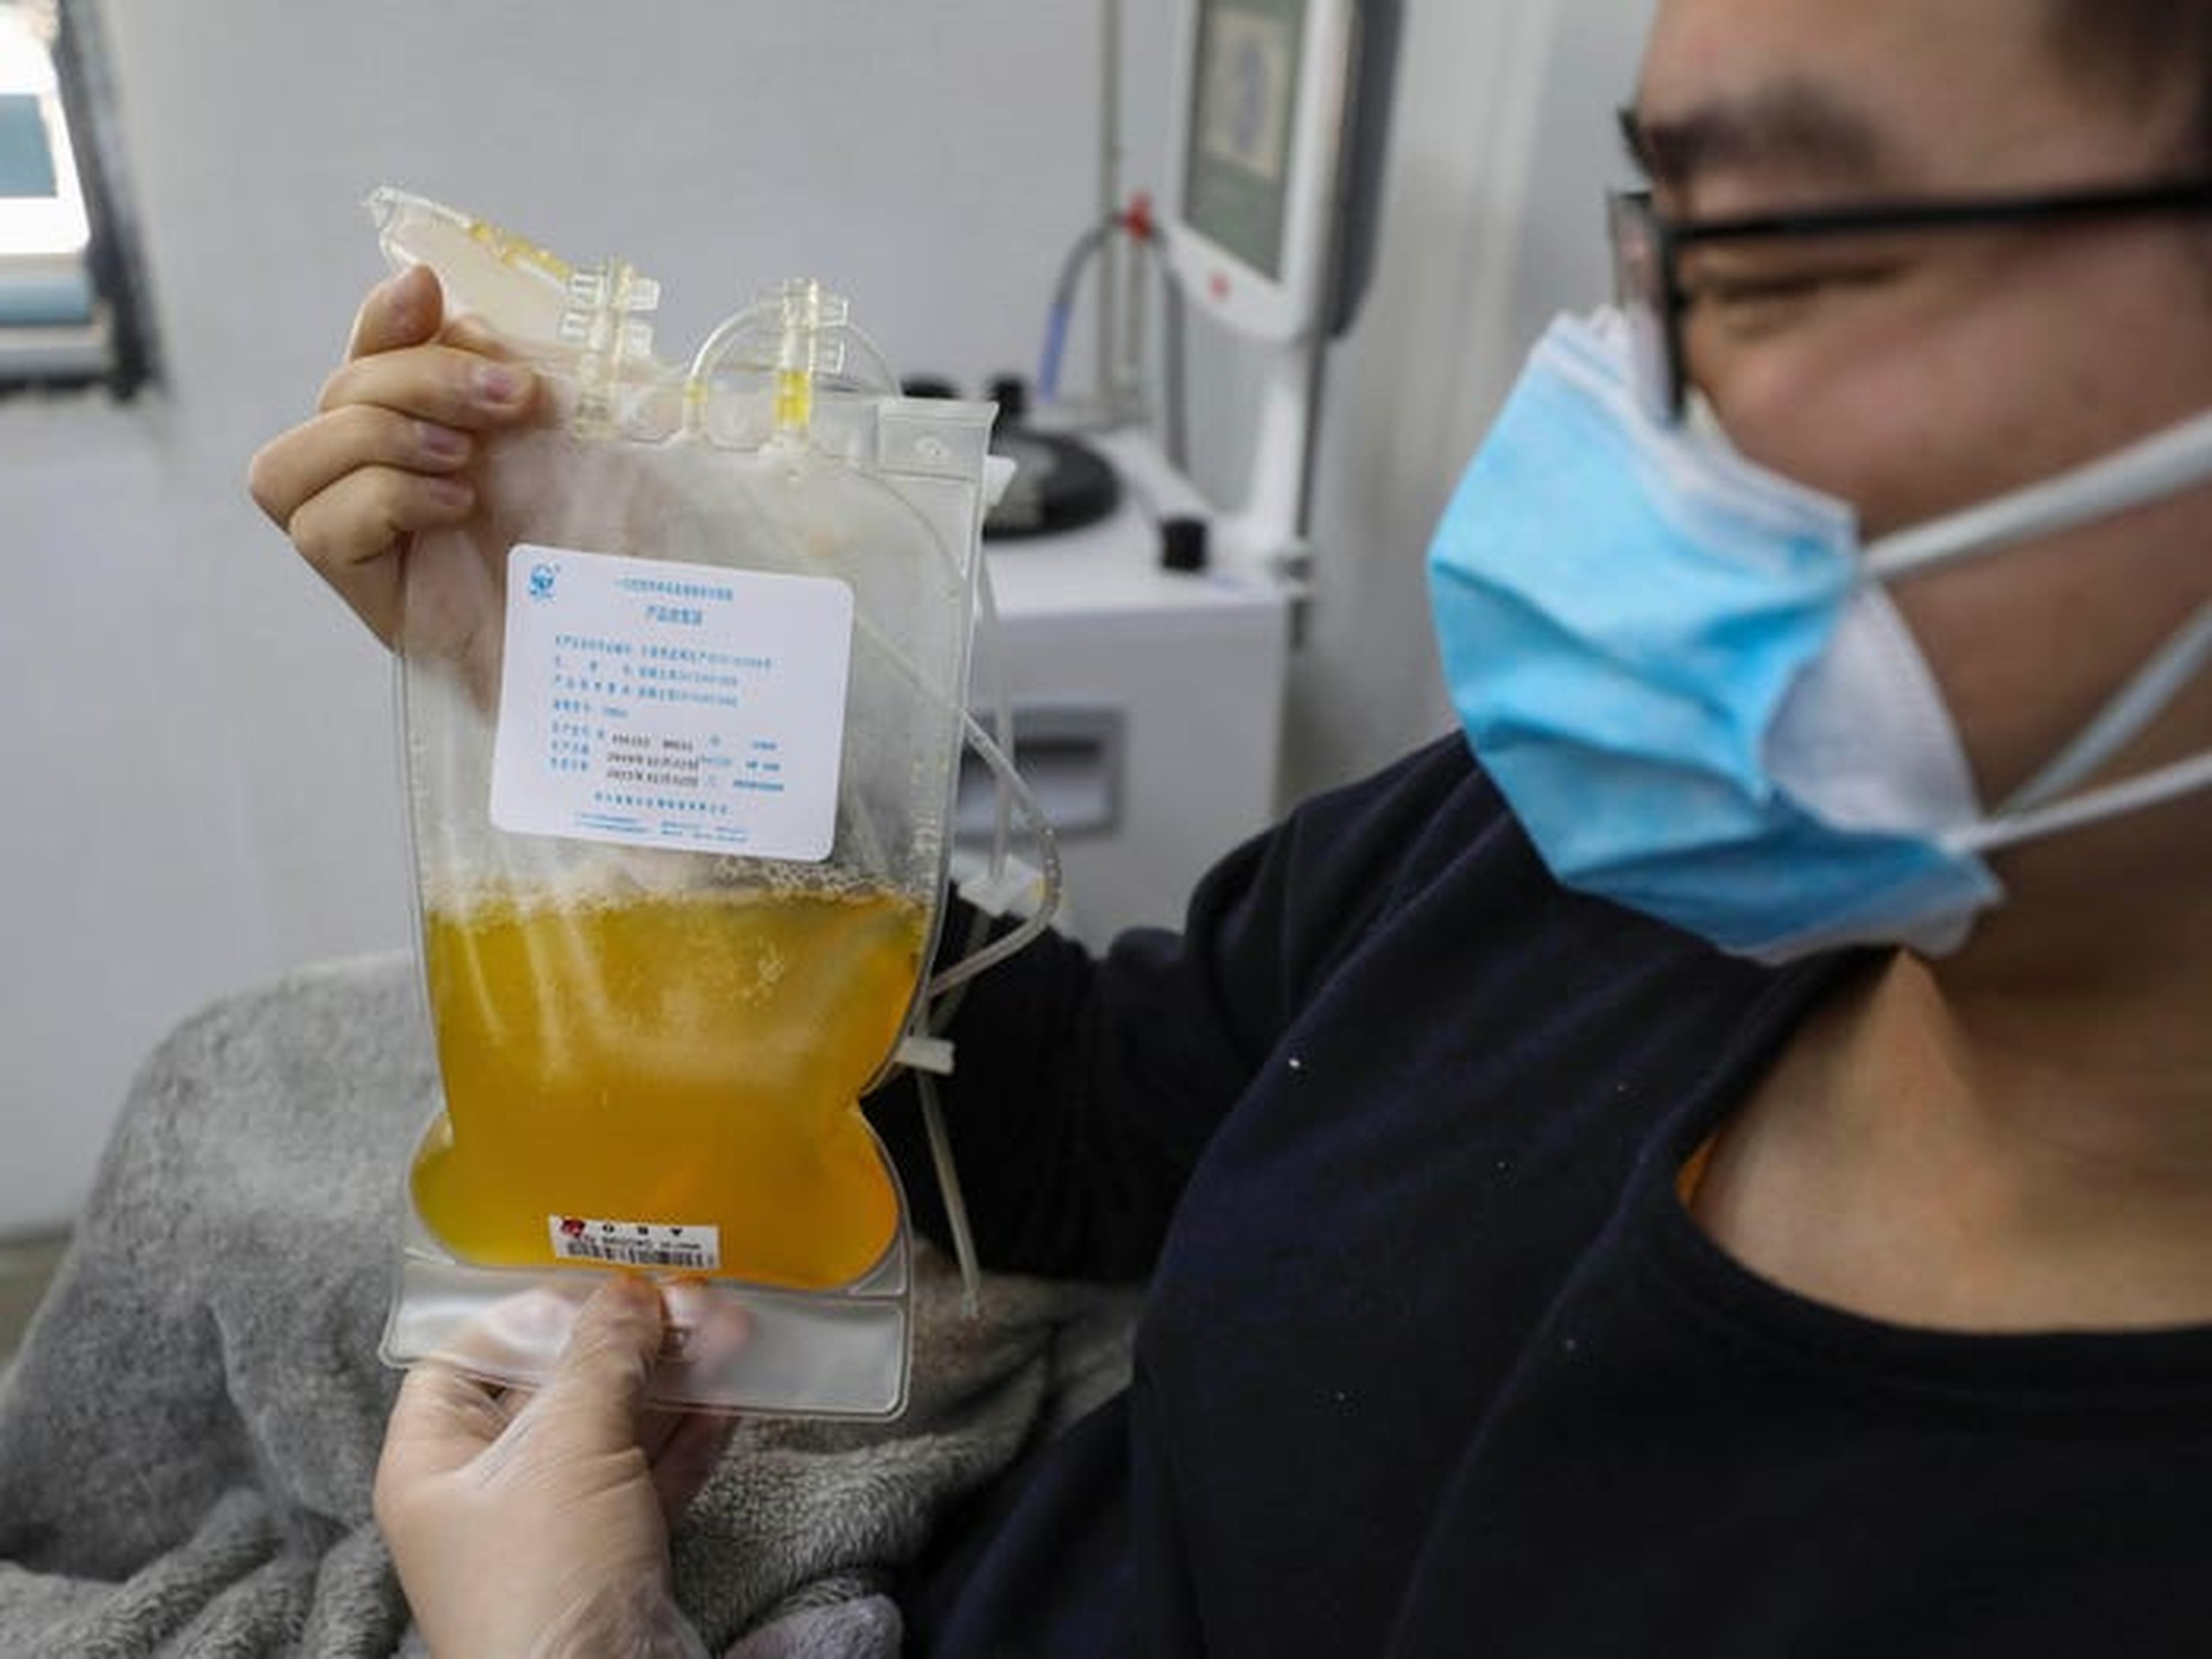 El doctor Zhou Min, un paciente recuperado de COVID-19 que ha pasado su cuarentena de 14 días, dona plasma en un centro de sangre en Wuhan, China.